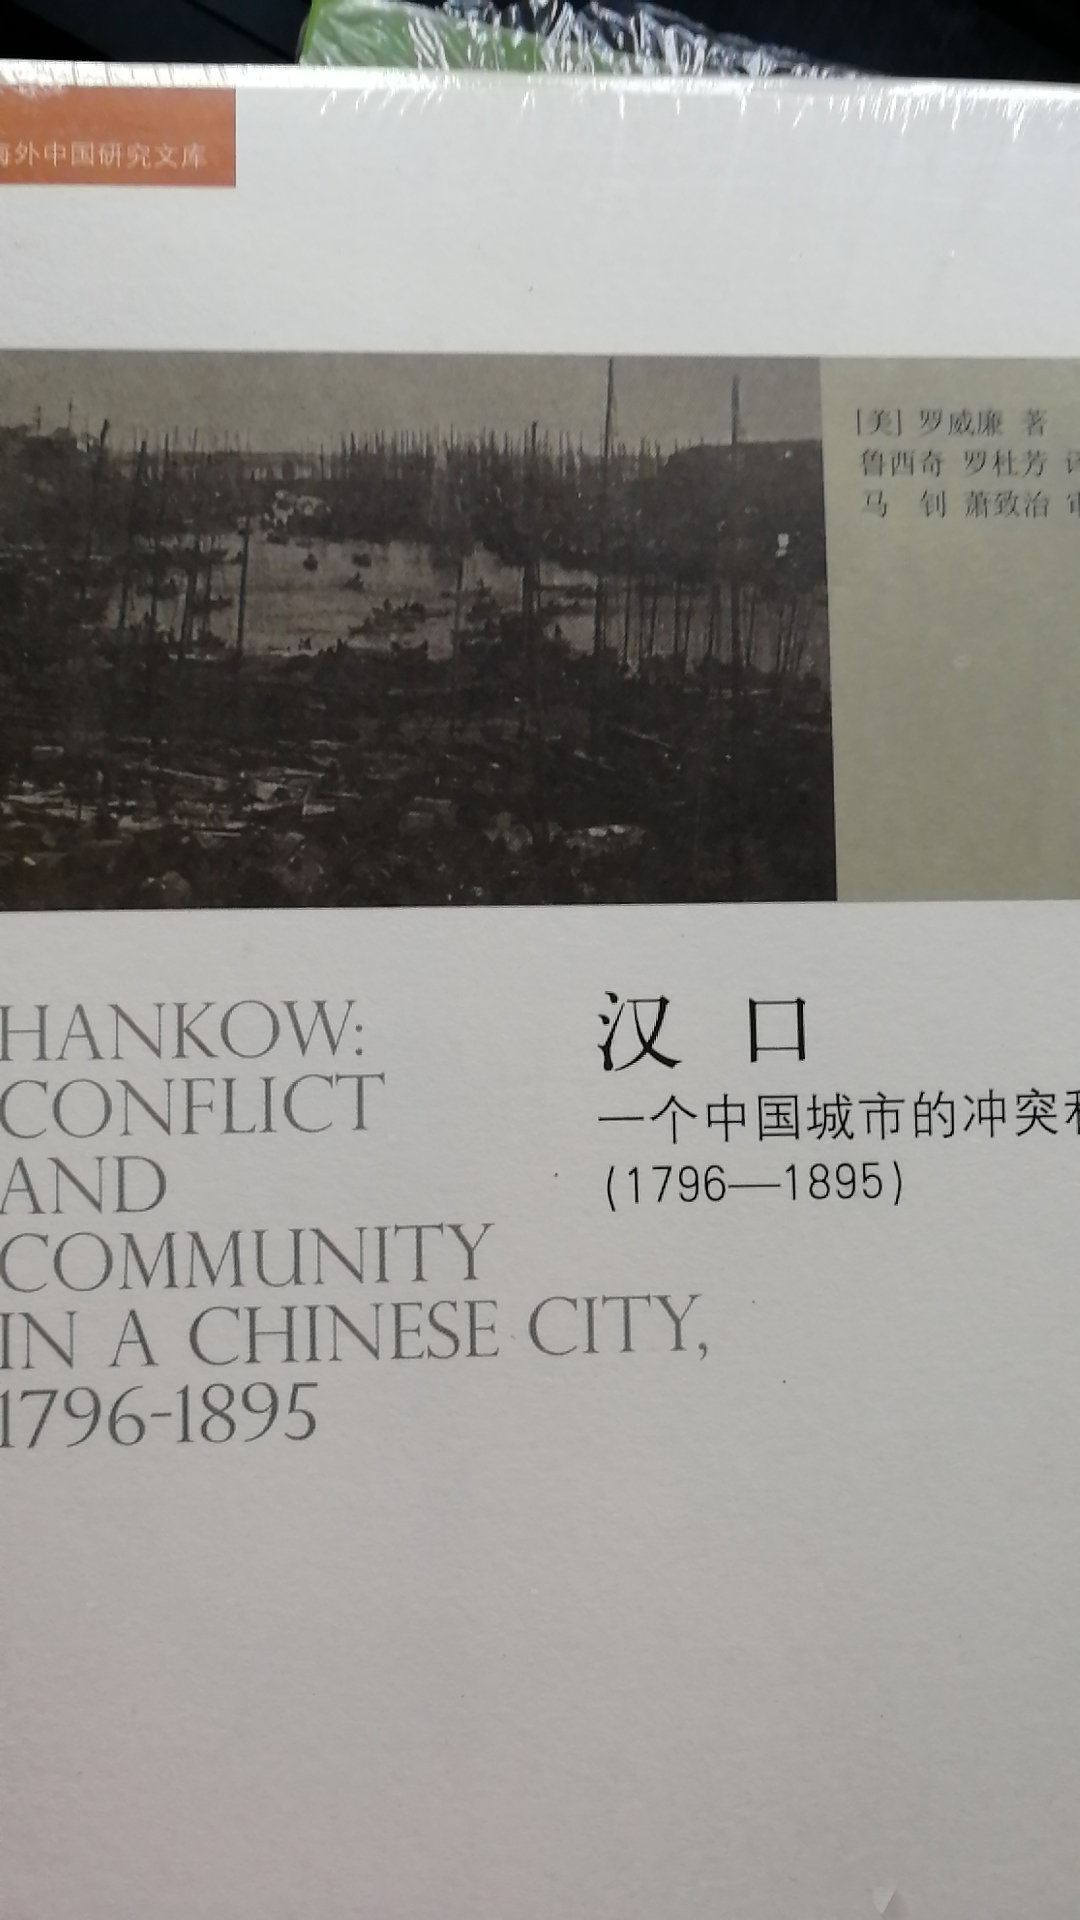 罗威廉的《汉口:一个中国城市的冲突与市区》视角独特。